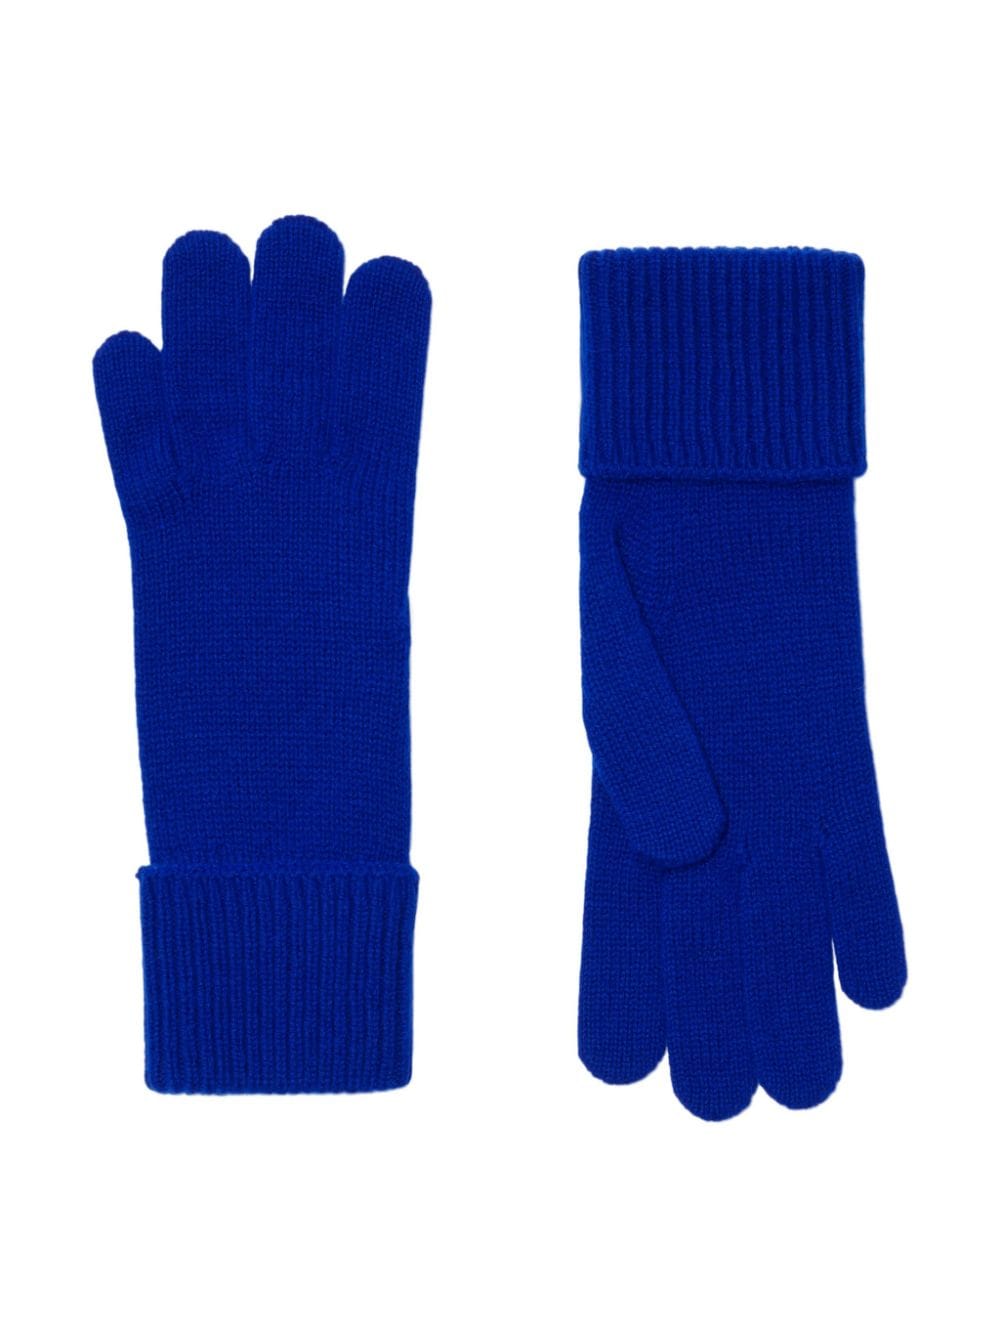 Fine-knit full-finger gloves<BR/><BR/><BR/>